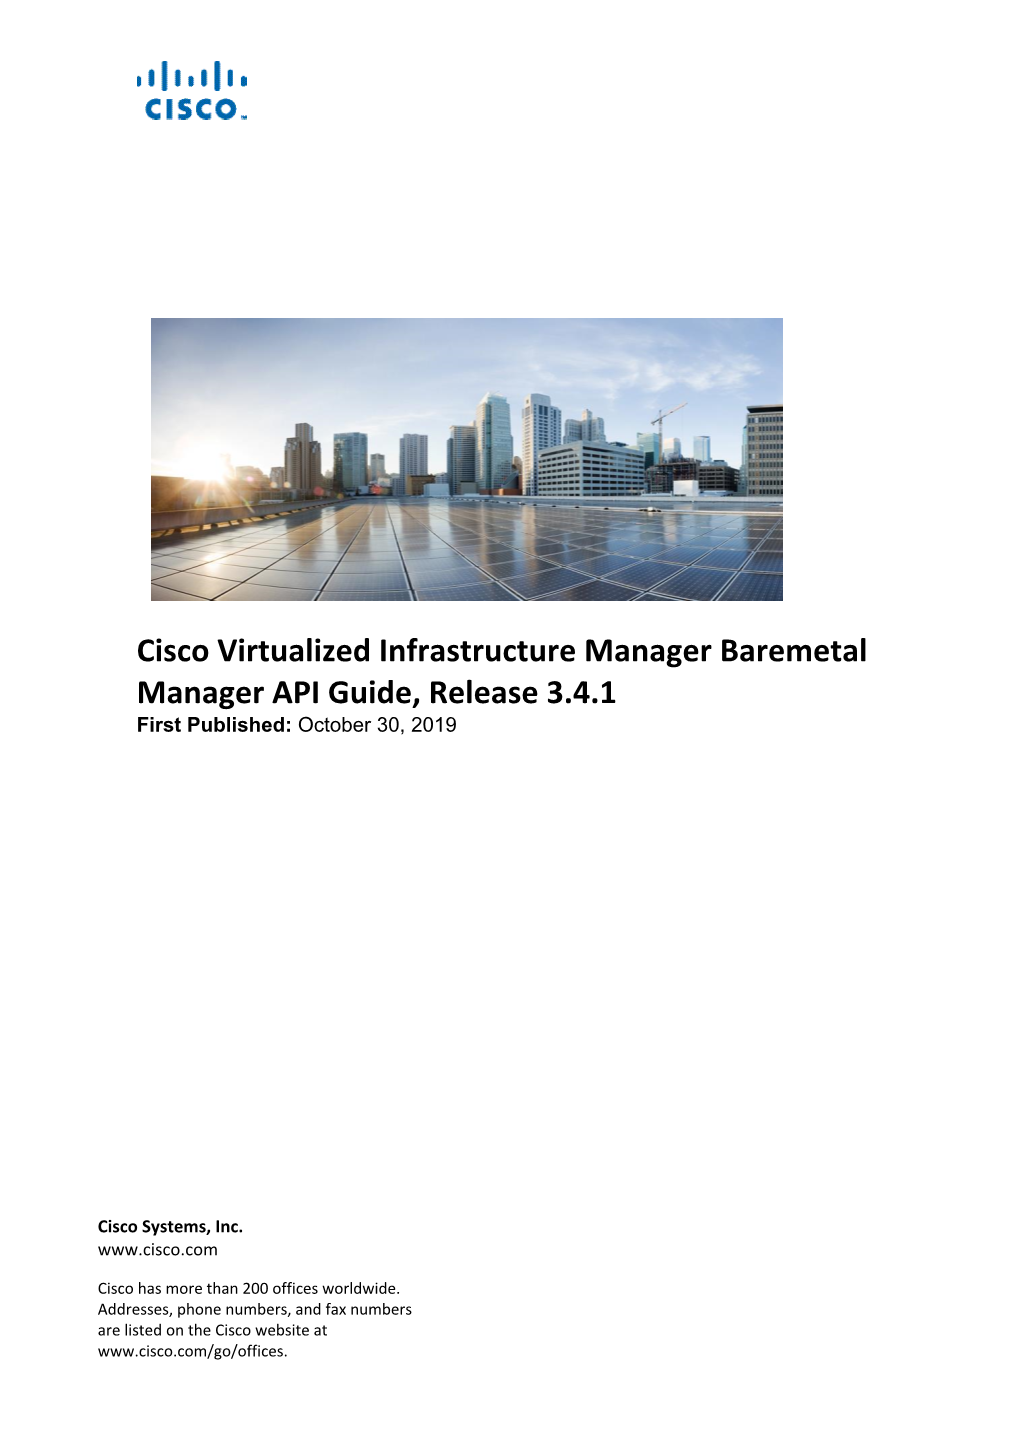 Cisco VIM Baremetal Manager API Guide